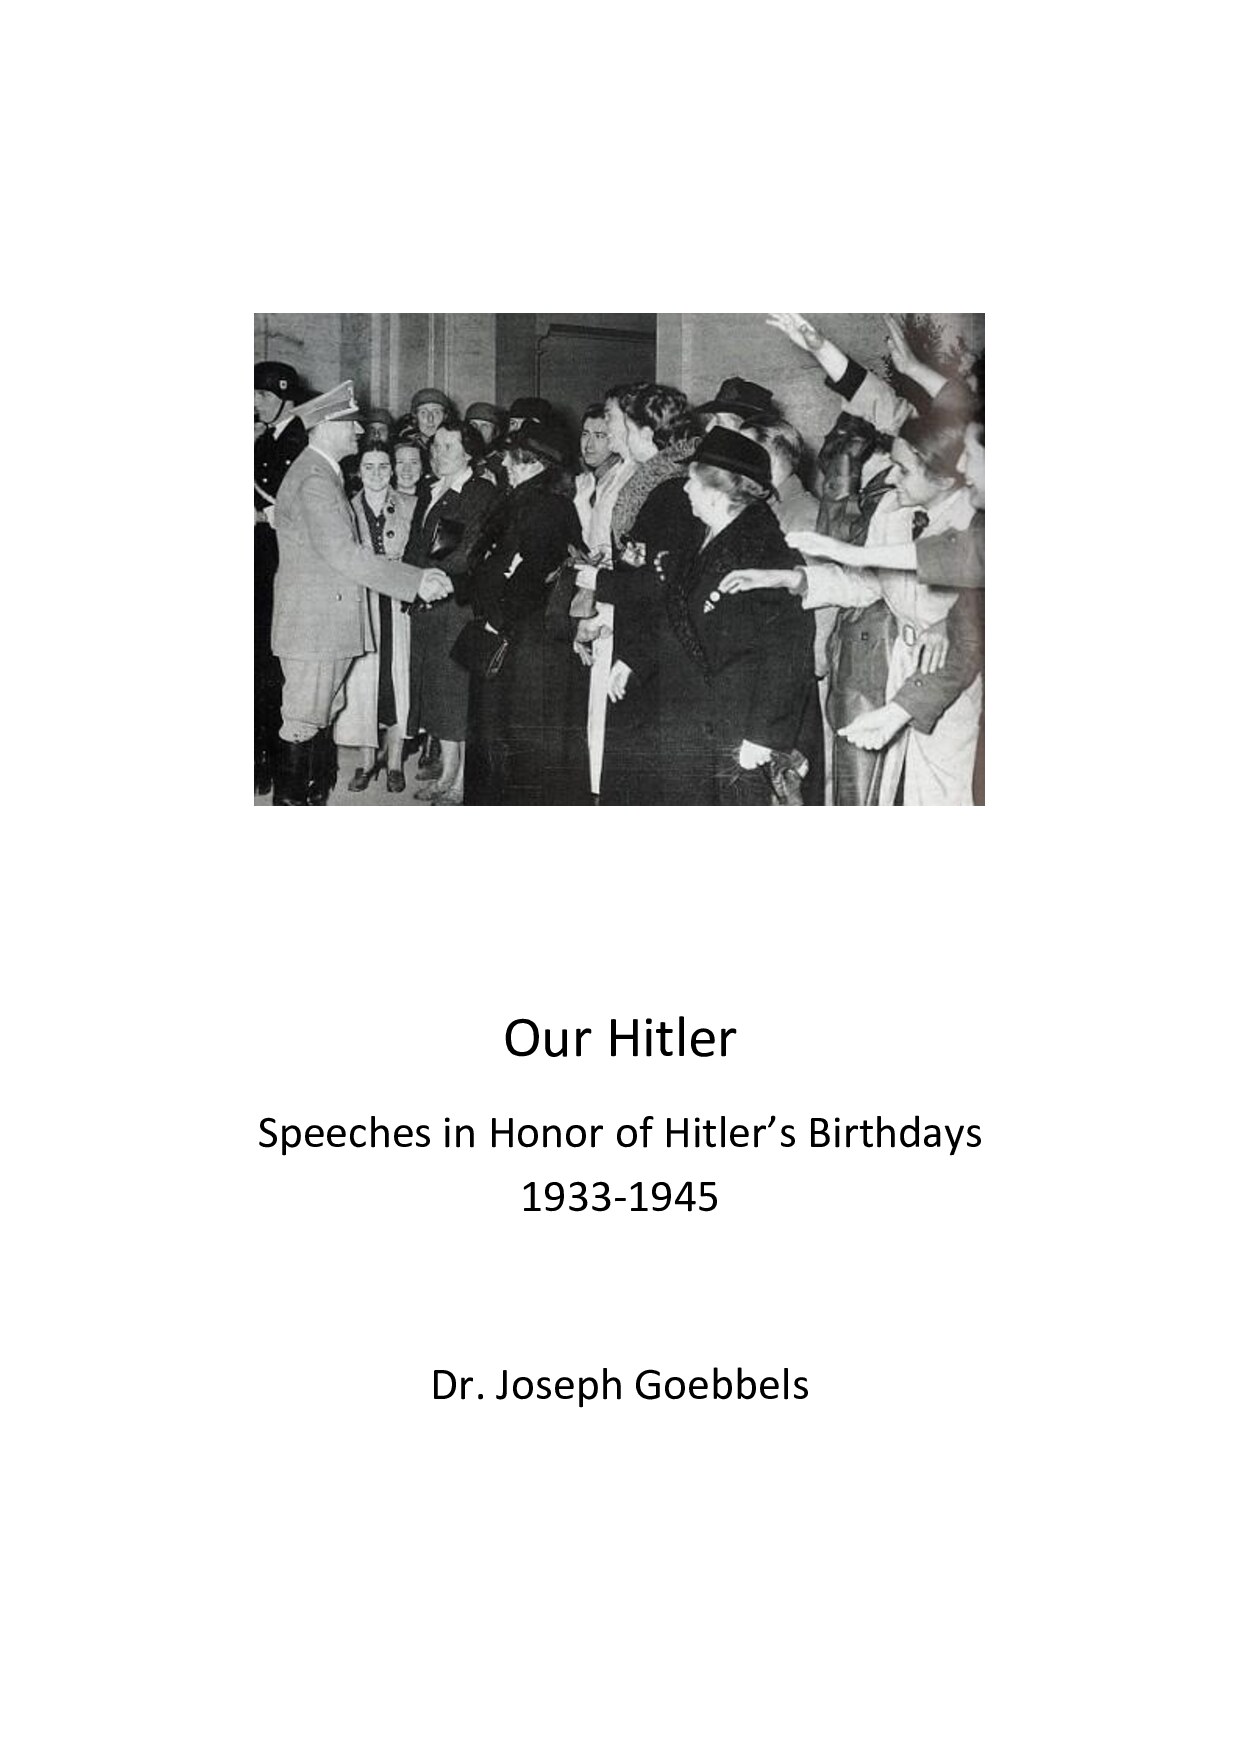 Our Hitler; Speeches in Honor of Hitler's Birthdays 1933-1945; Goebbels, Joseph